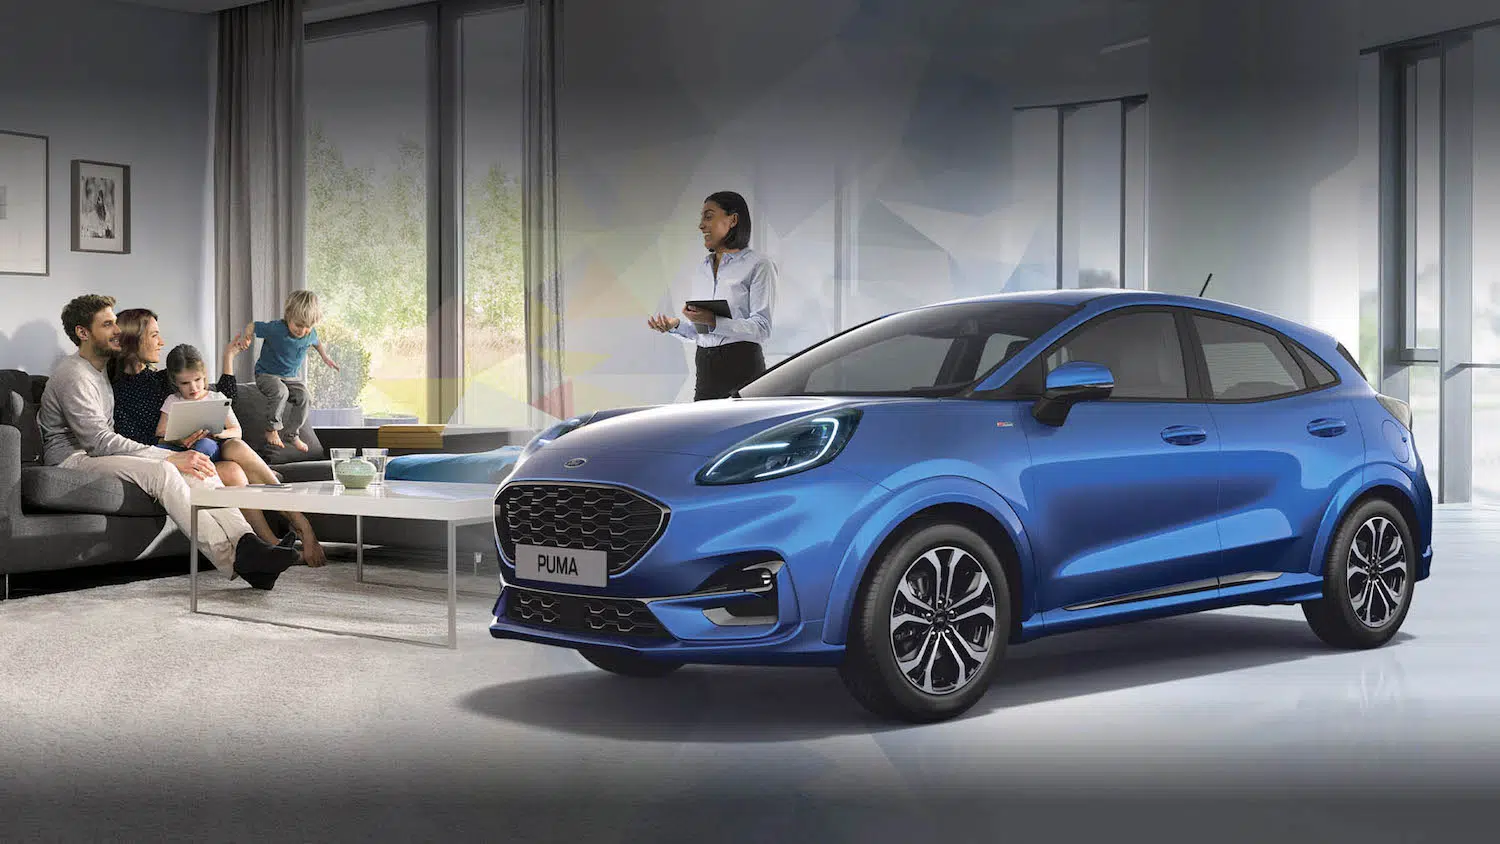 Αρχική - Ford New Motion Pazaropoulos • Αγορά, Test Drive, Service, After Sales